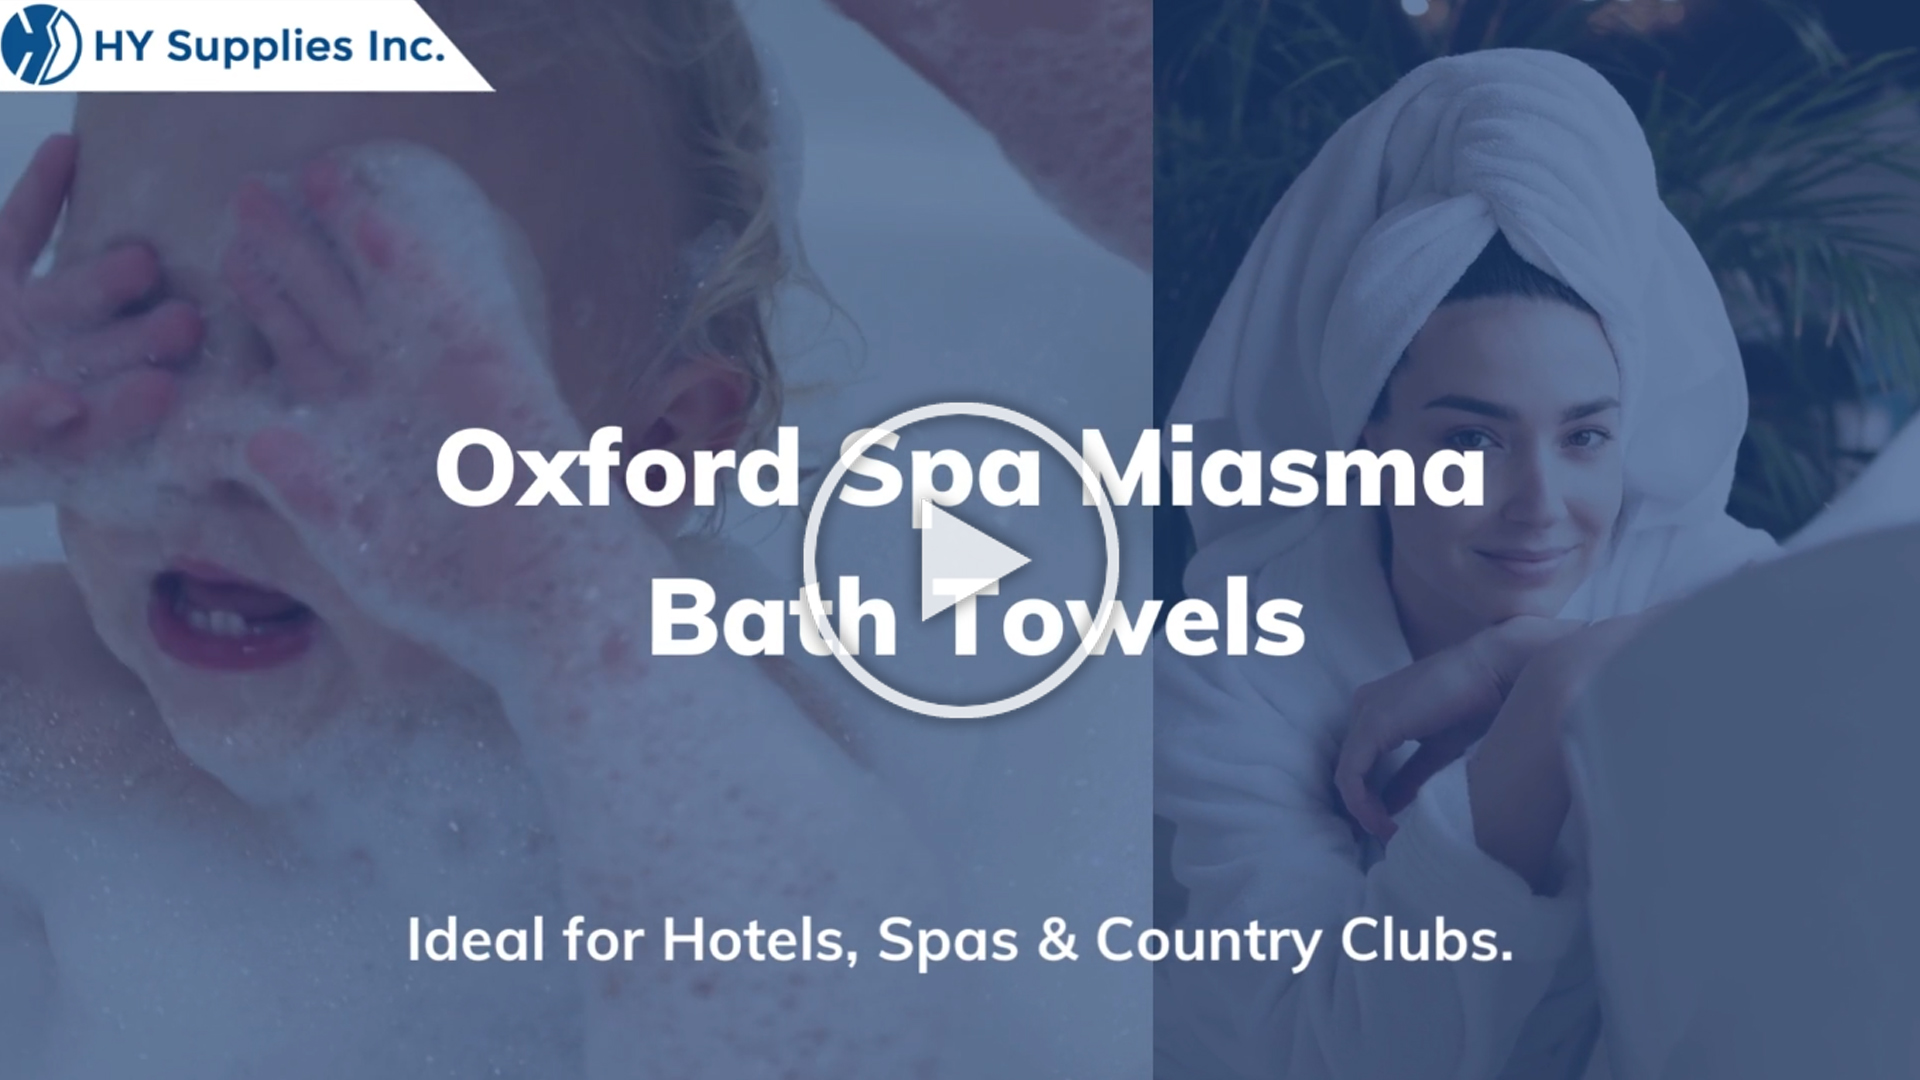 Oxford Spa Miasma Bath Towels